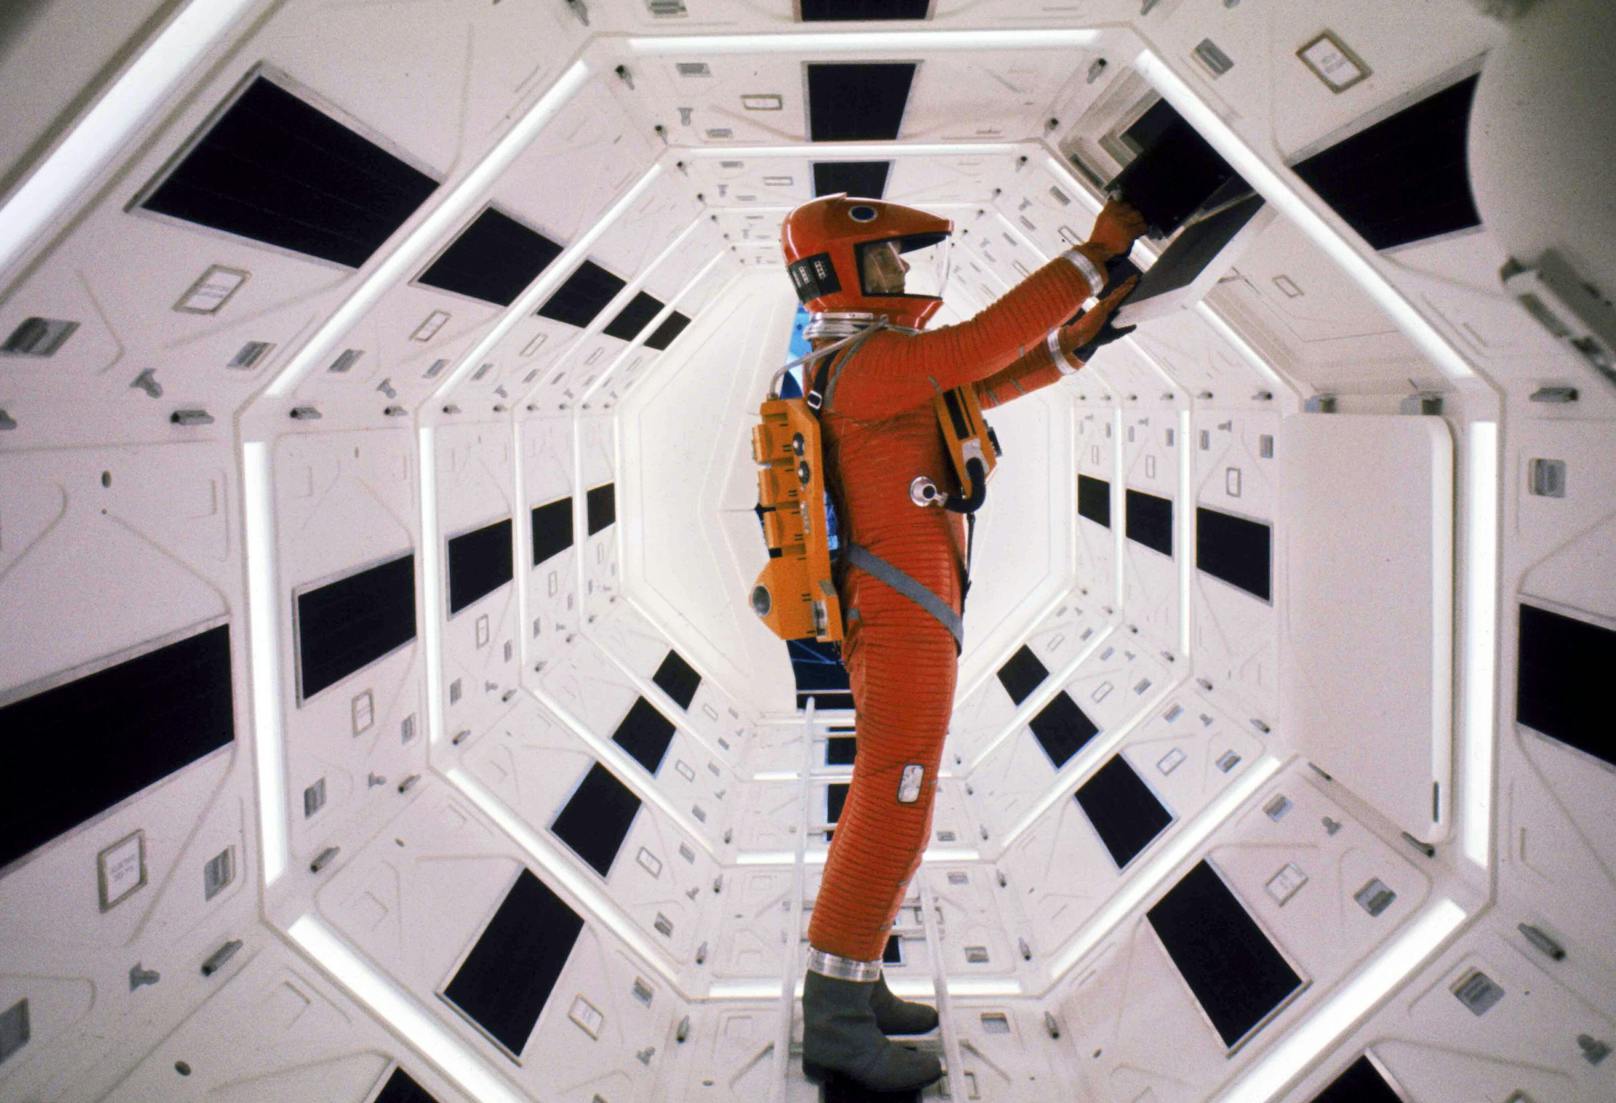 <strong>PLATZ 9: 2001: A SPACE ODYSSEY</strong><br>(USA/UK 1968, Regie: Stanley Kubrick) <br><br>Film-Genie Stanley Kubricks "Odyssee im Weltraum" ist nicht nur für ihre bahnbrechende Spezialeffekte und mehrdeutige Bildsprache bekannt. Das visionäre Meisterwerk des britischen Filmemachers bietet auch nach über 50 Jahren noch immer Raum für Spekulationen. Zwei Astronauten befinden sich auf einer Mond-Mission, während der Bordcomputer HAL 9000 immer mehr zur Bedrohung der Crew wird.